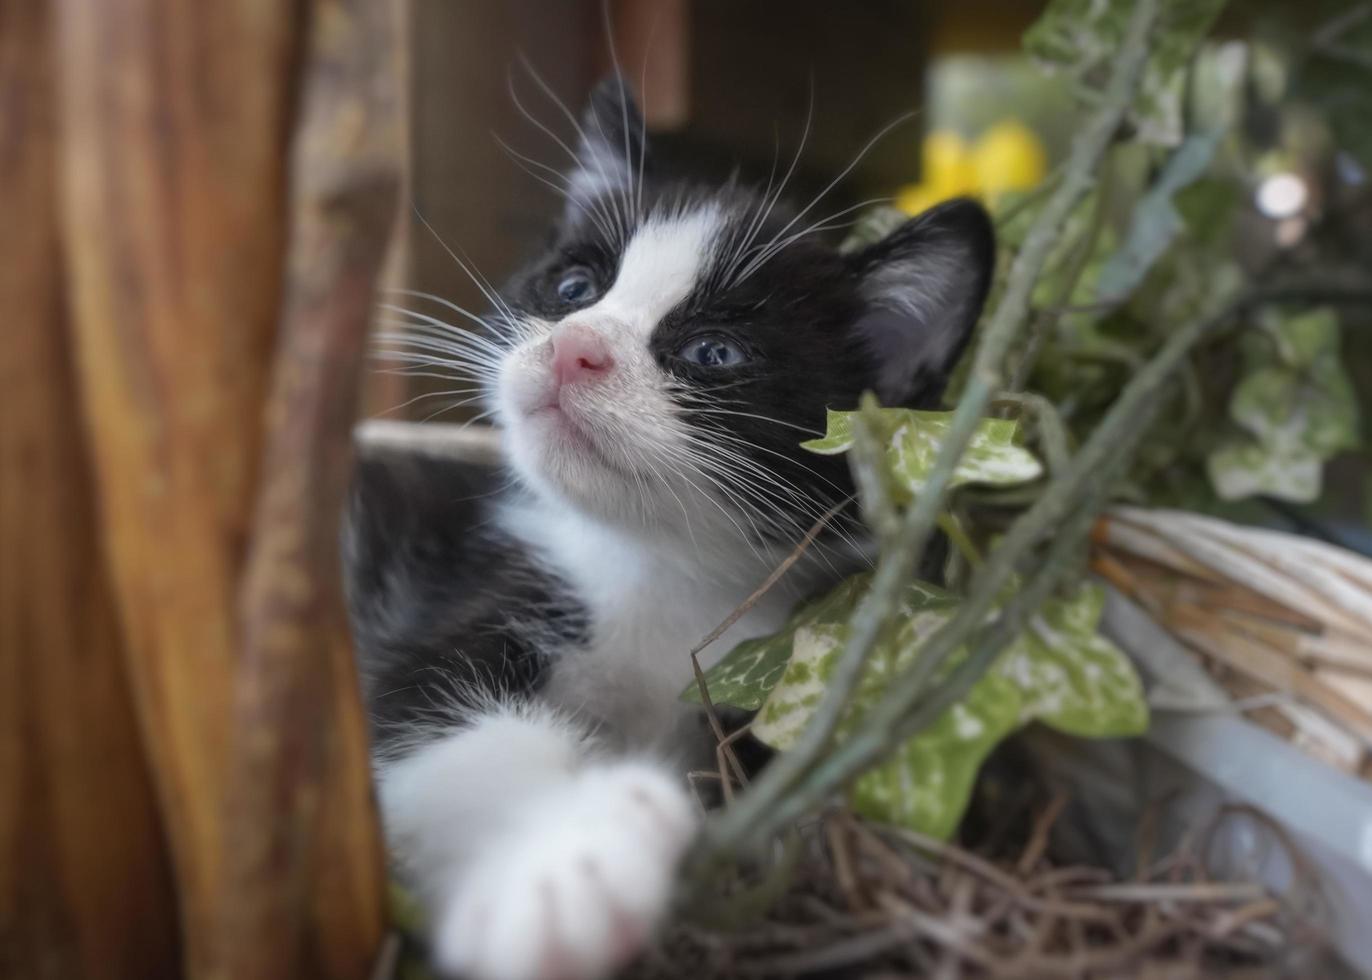 belleville, il 2022 - svart och vit kattunge som slappar i blomkruka foto